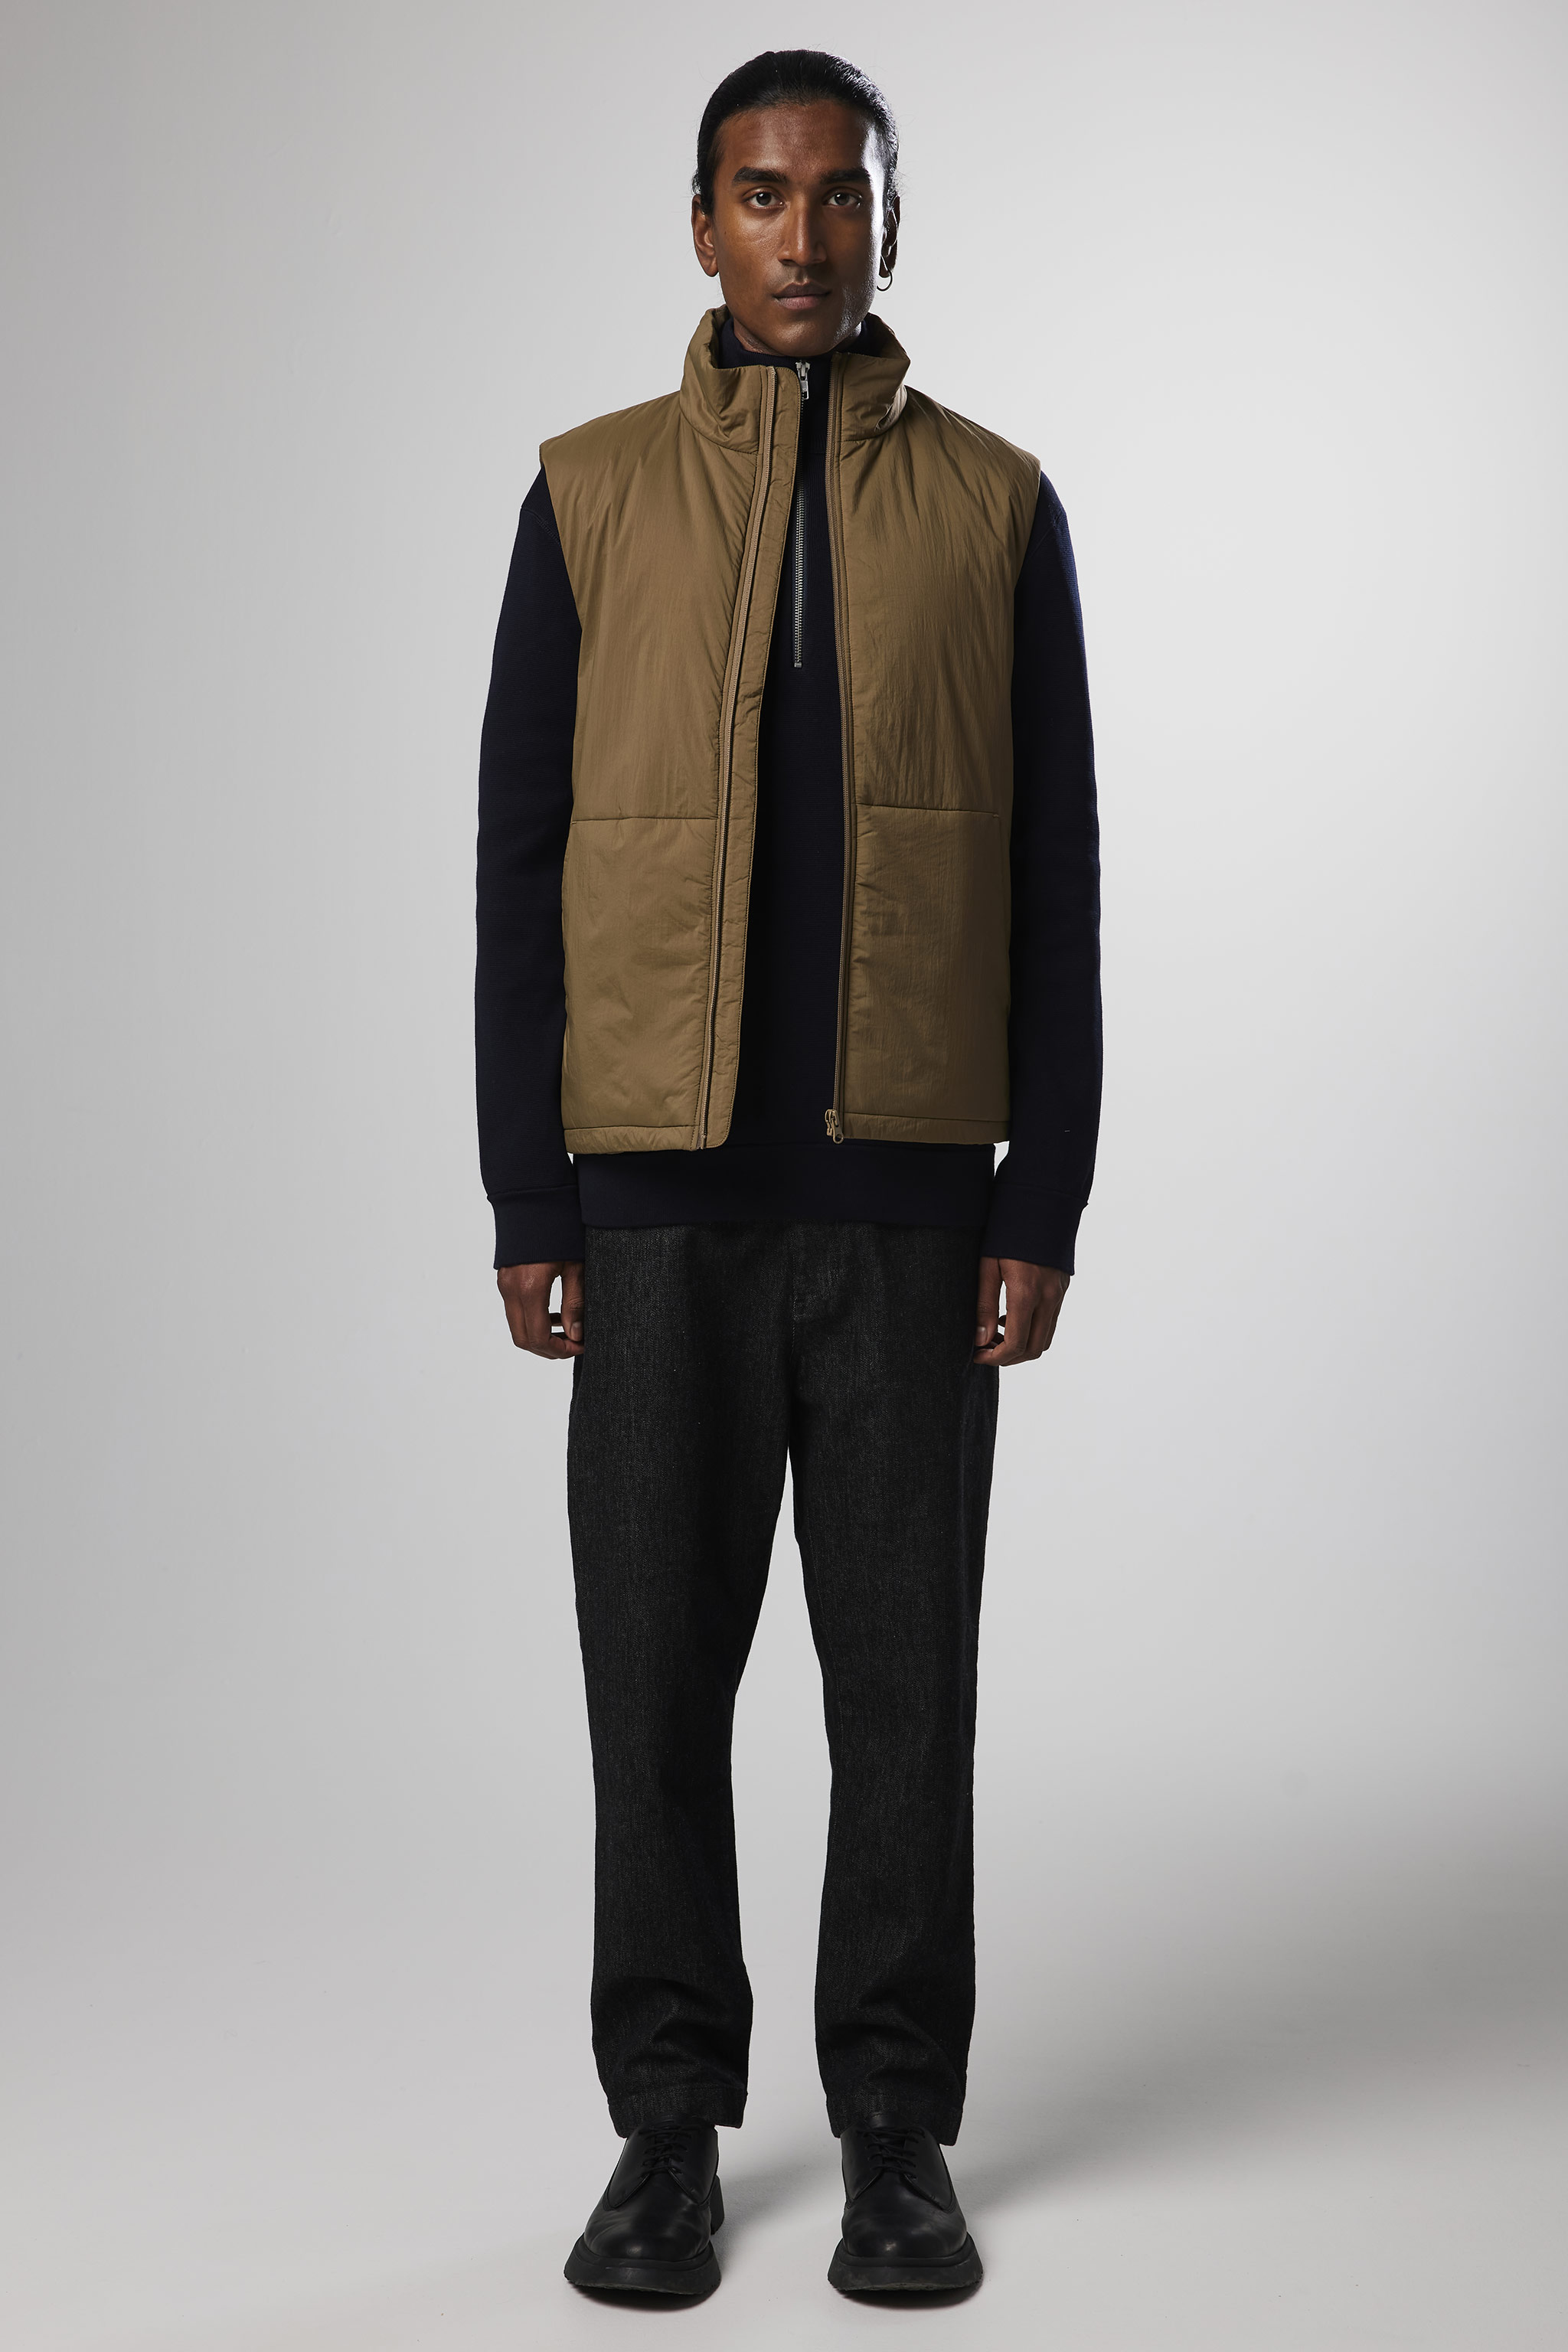 Verve 8245 men's vest - Brown - Buy online at